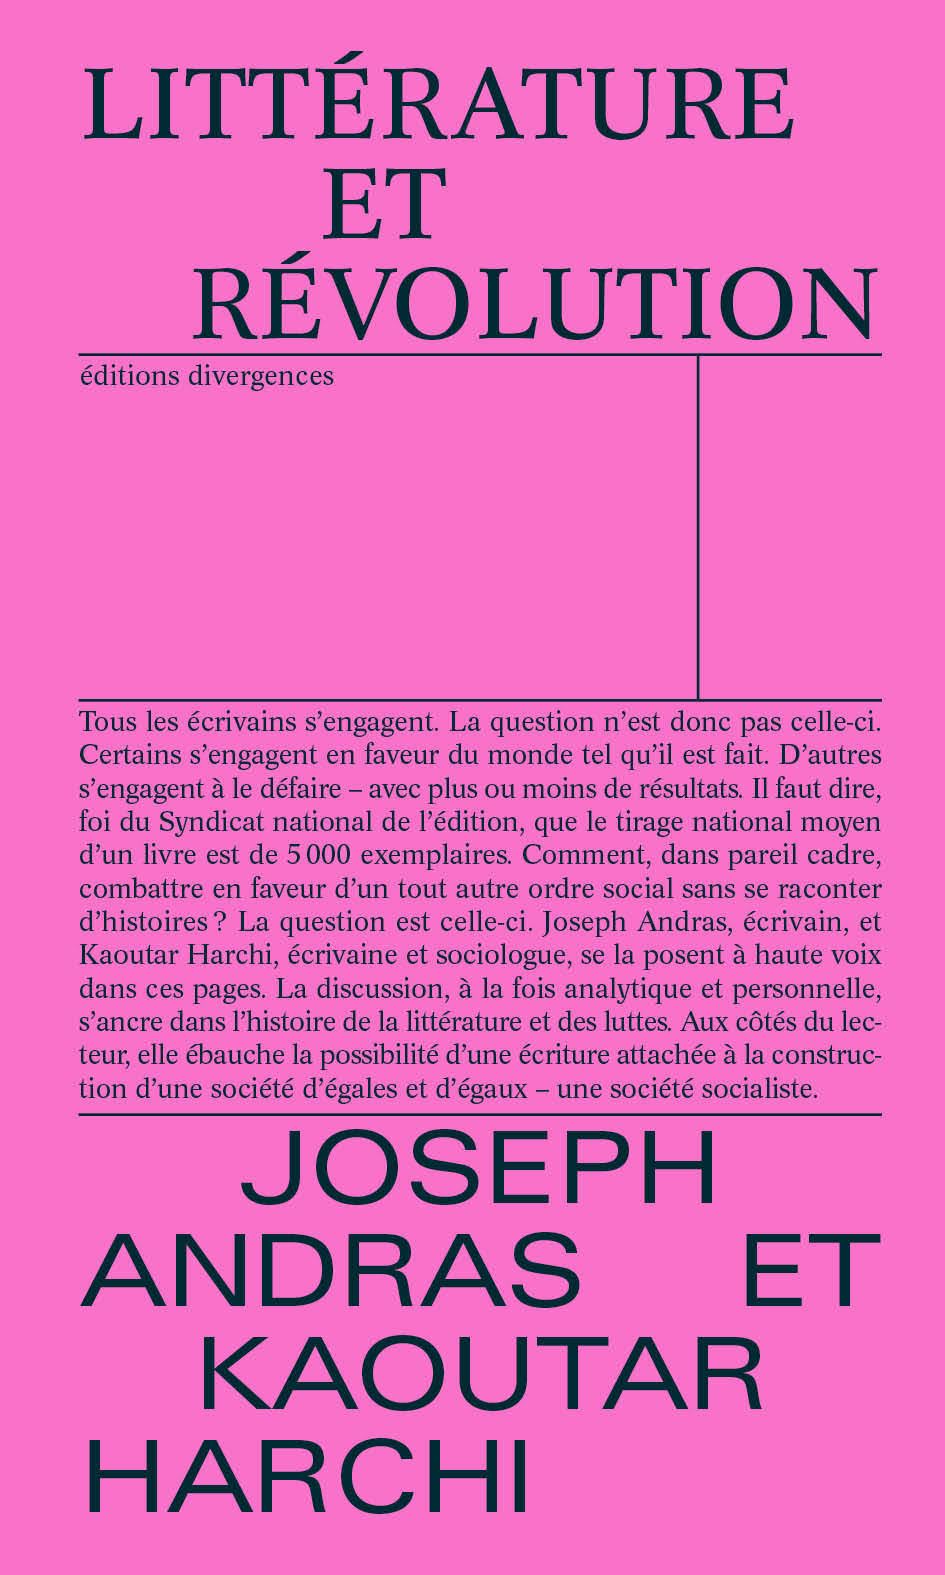 Littérature et révolution / Joseph Andras et Kaoutar Harchi